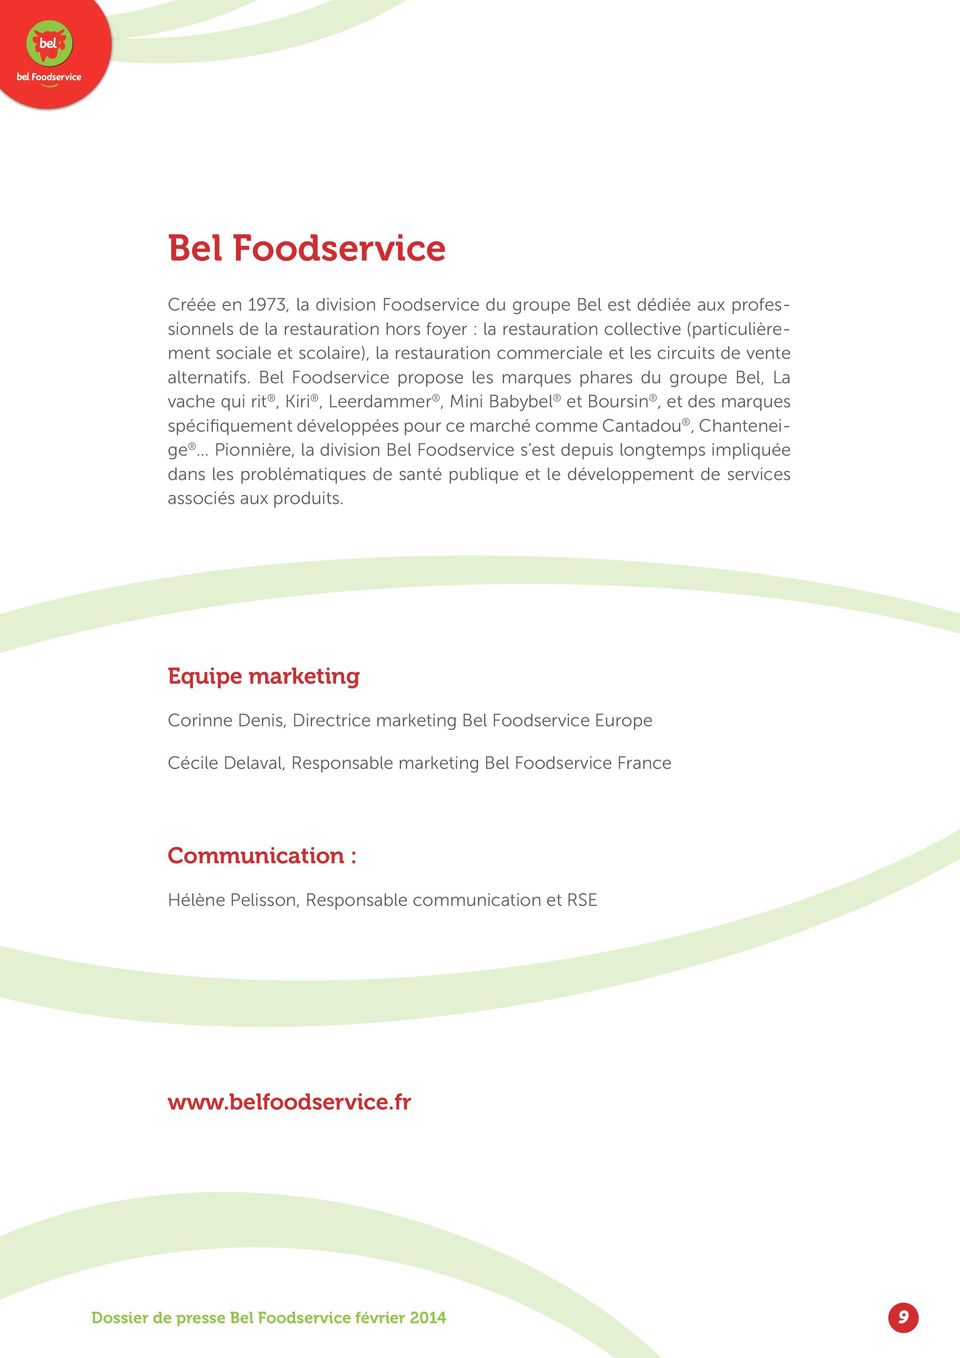 Bel Foodservice propose les marques phares du groupe Bel, La vache qui rit, Kiri, Leerdammer, Mini Babybel et Boursin, et des marques spécifiquement développées pour ce marché comme Cantadou,